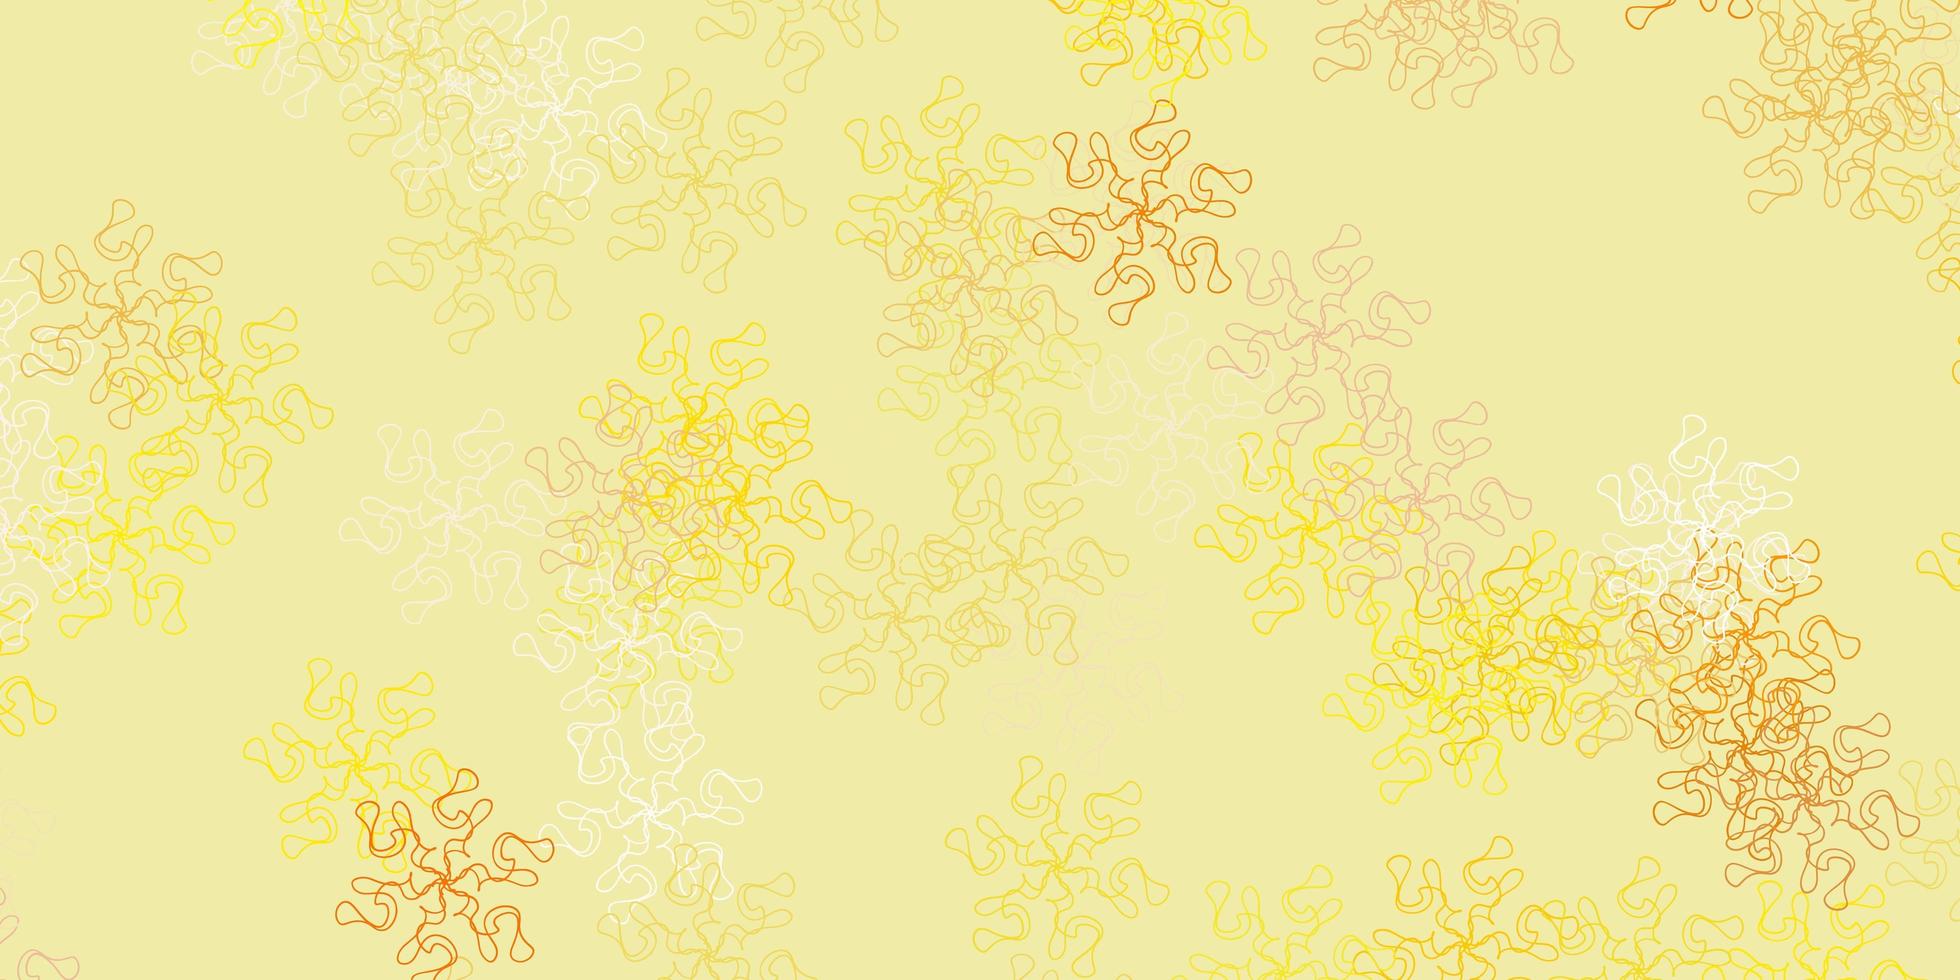 padrão de doodle de vetor amarelo claro com flores.